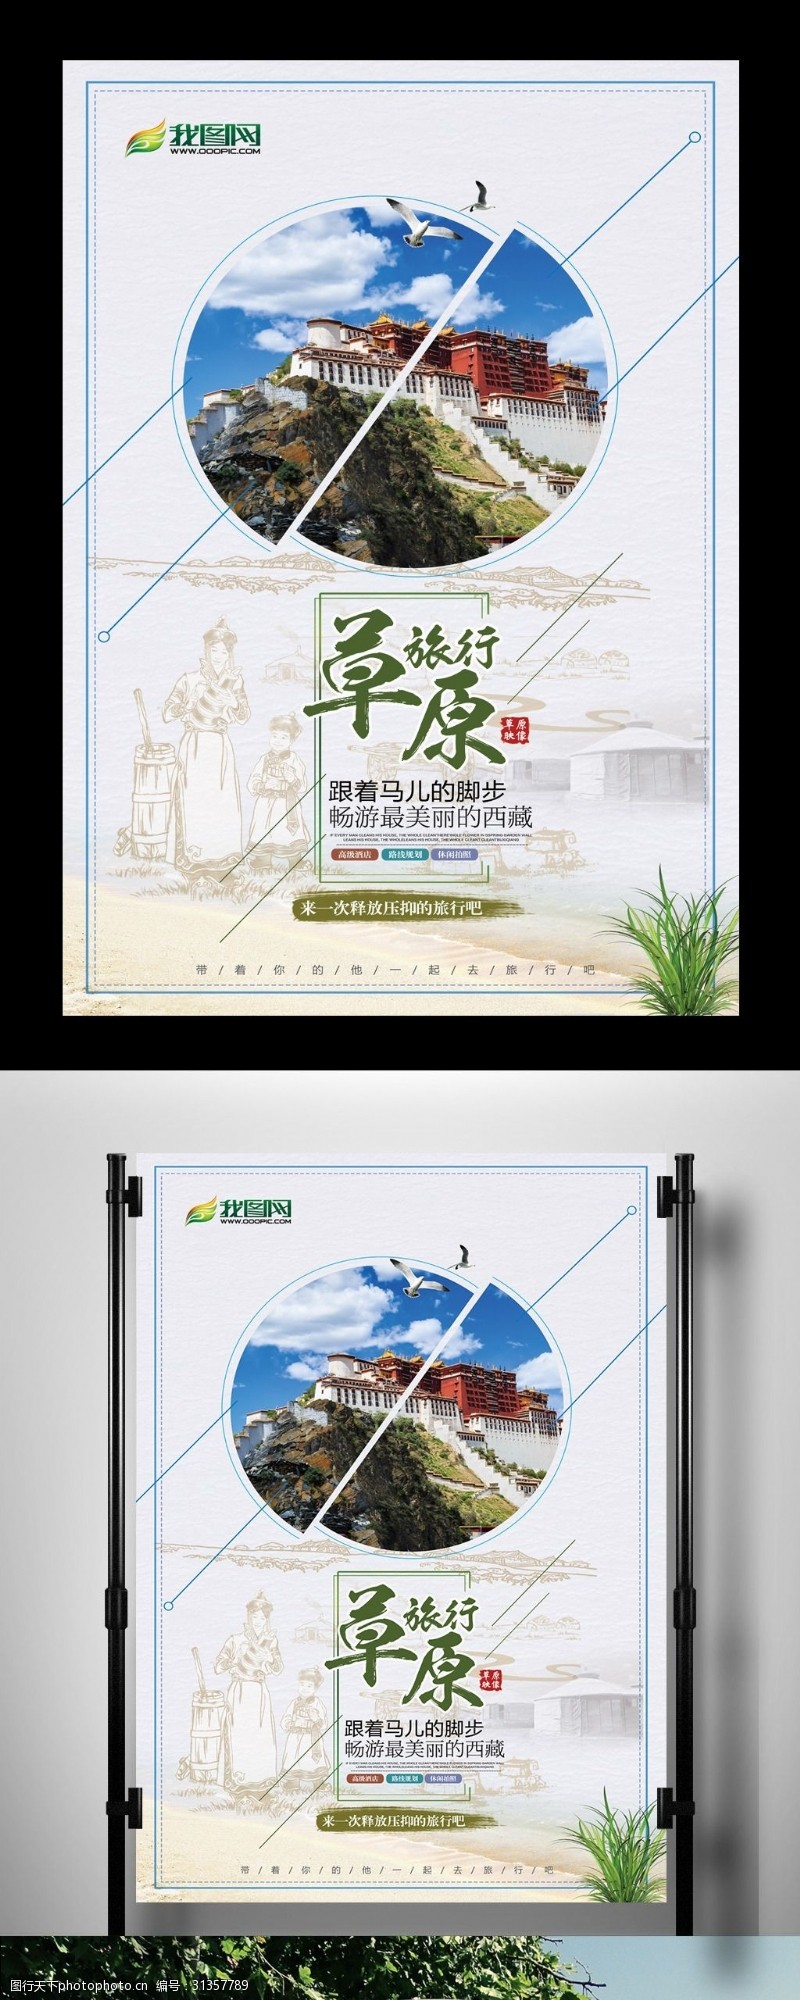 个性时尚西藏旅游海报设计模板